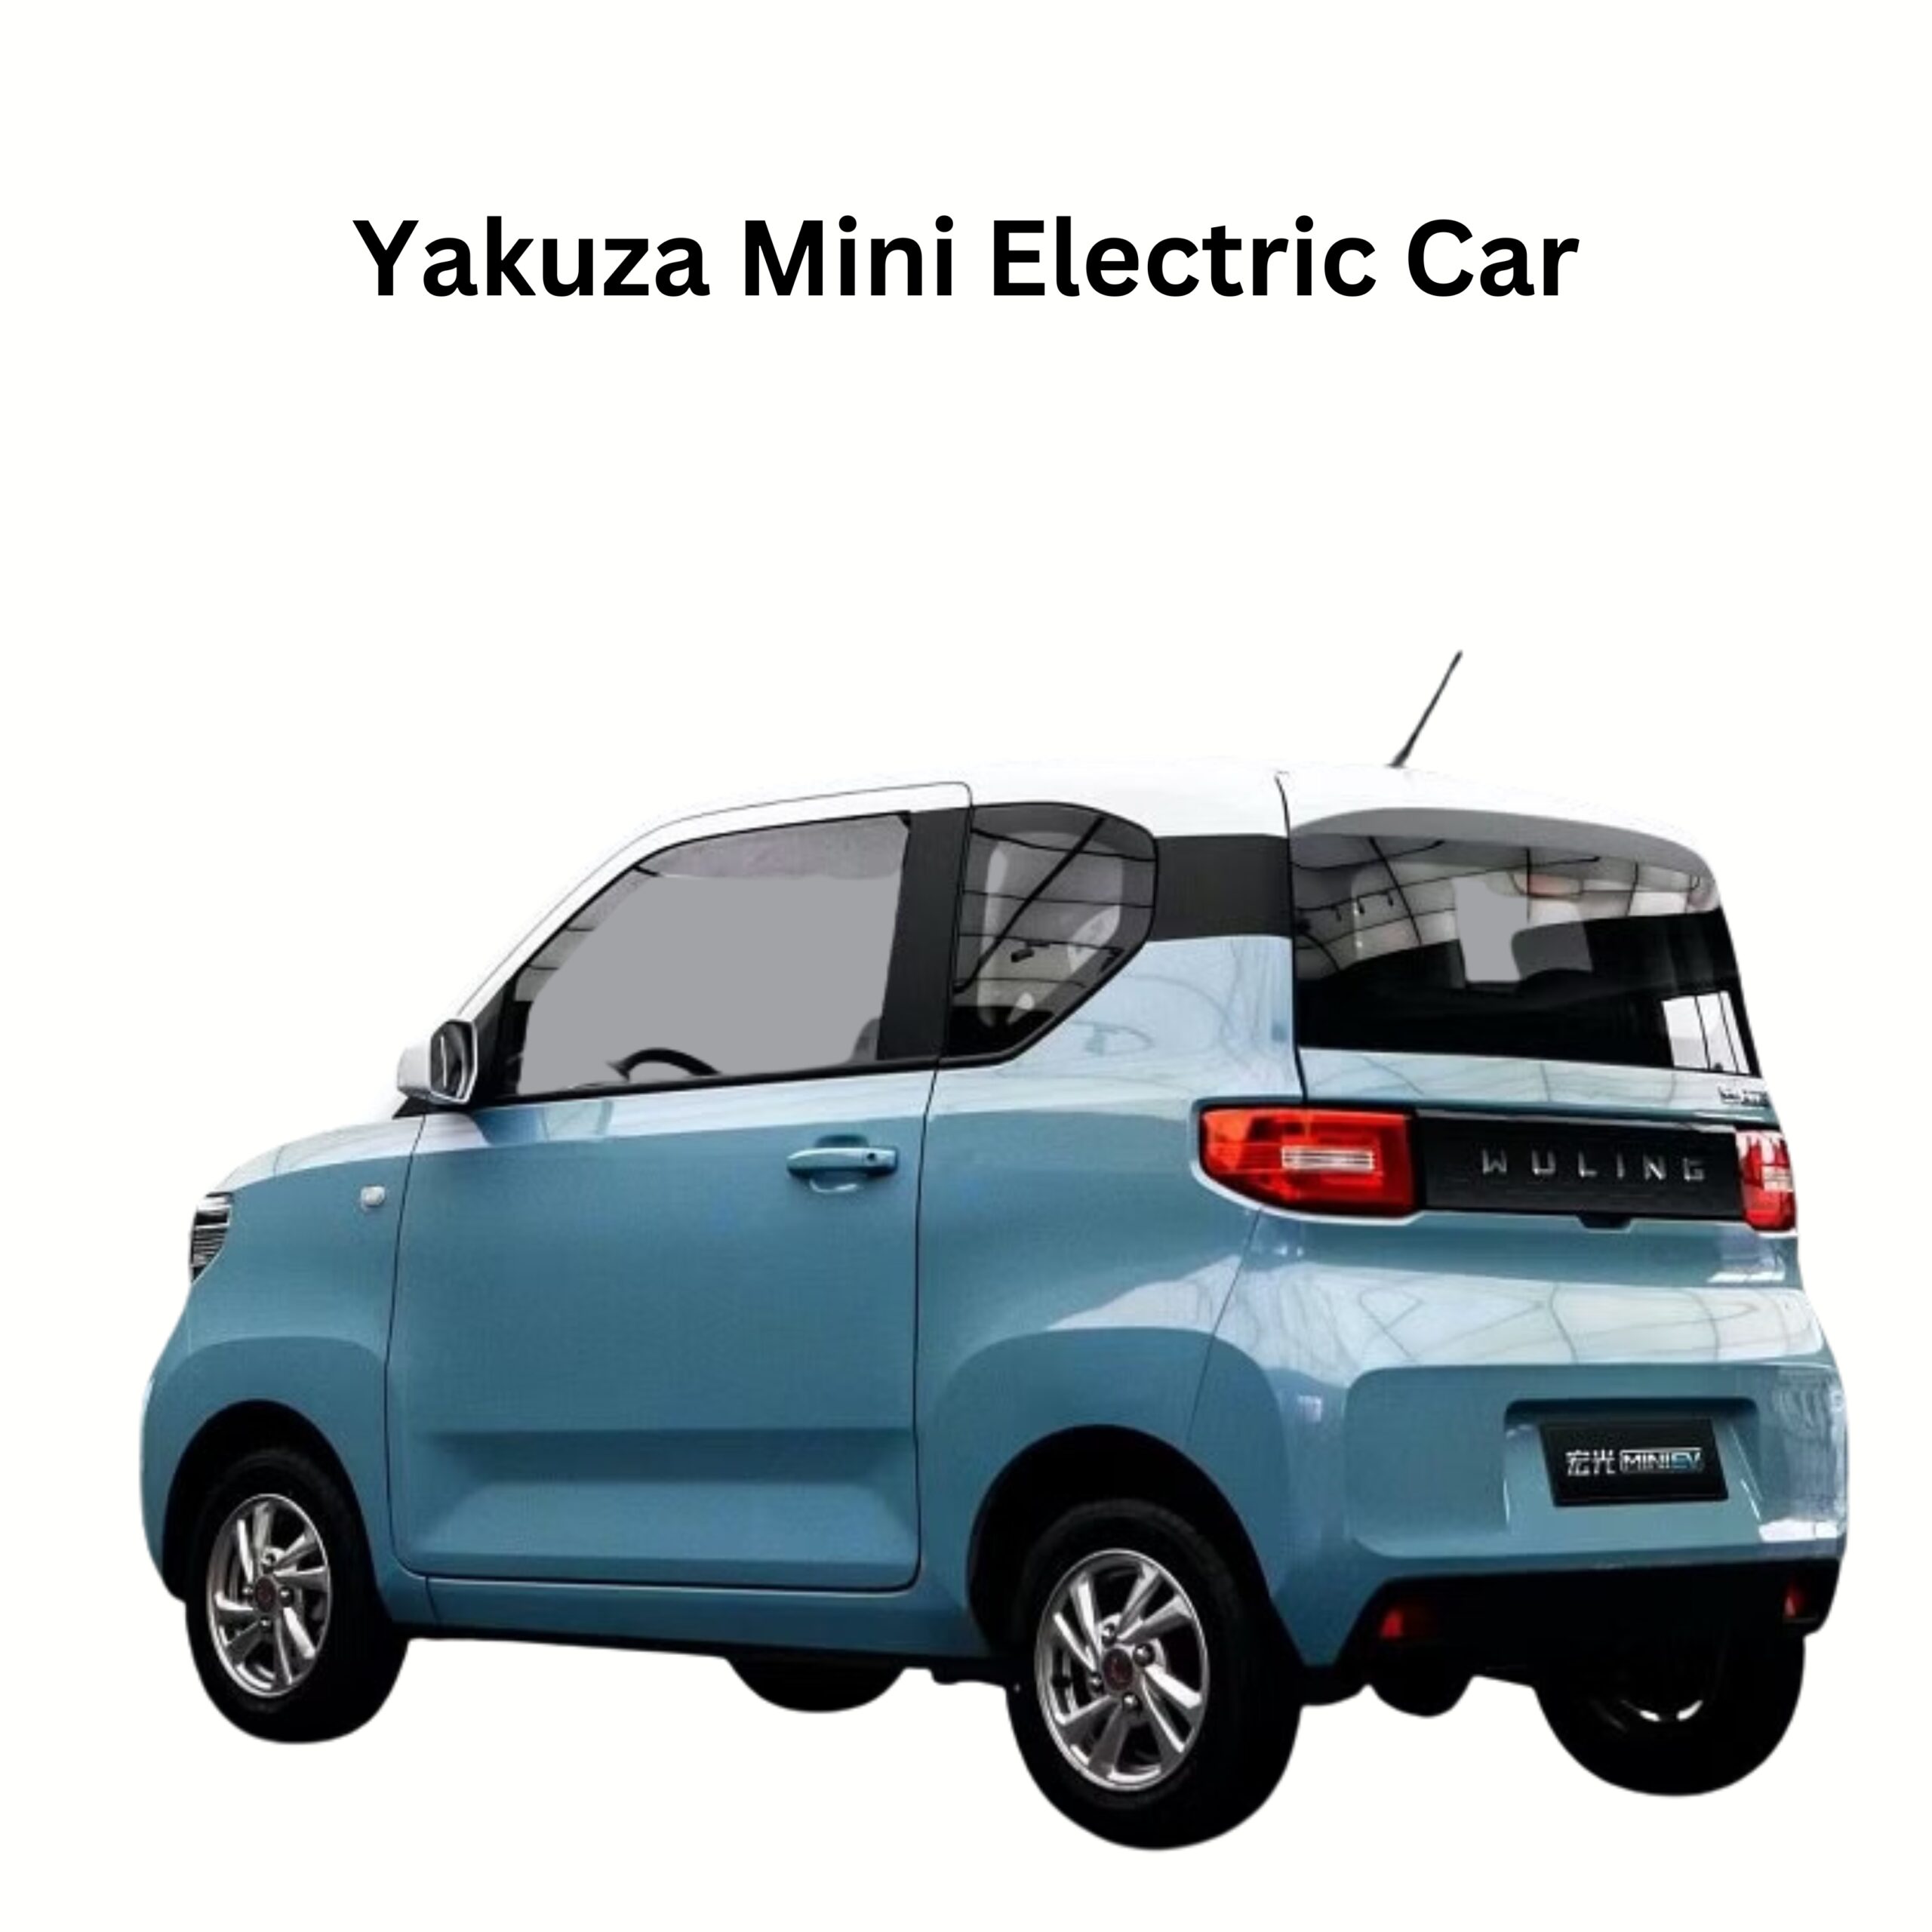 Yakuza Mini Electric Car